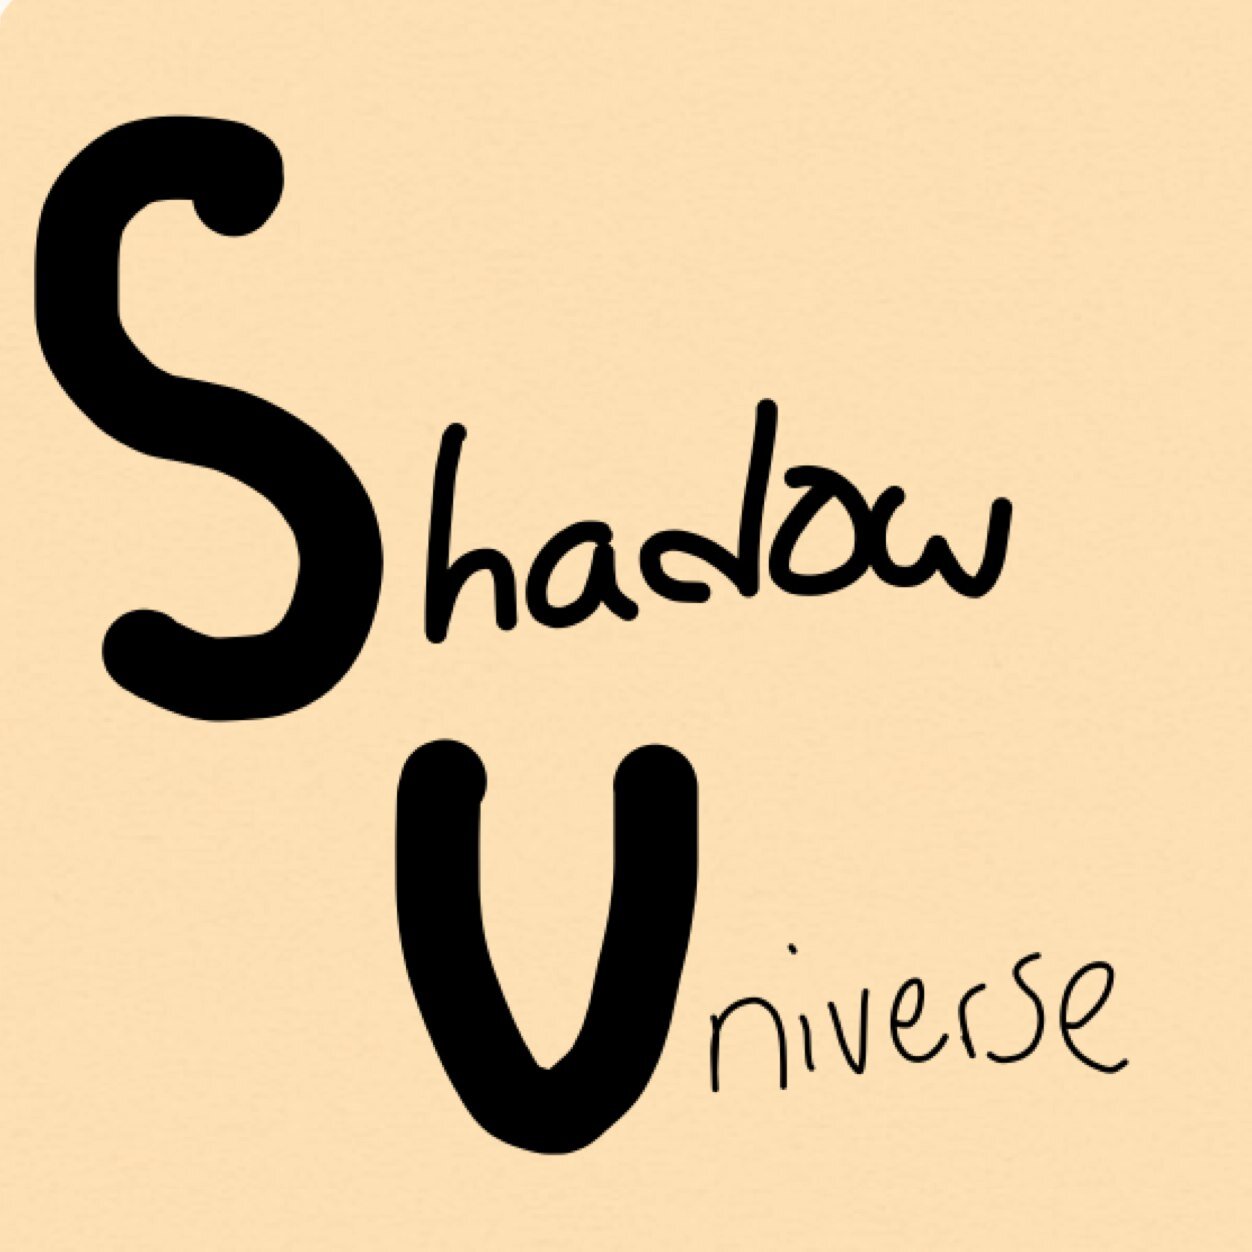 Shadow Universe! 